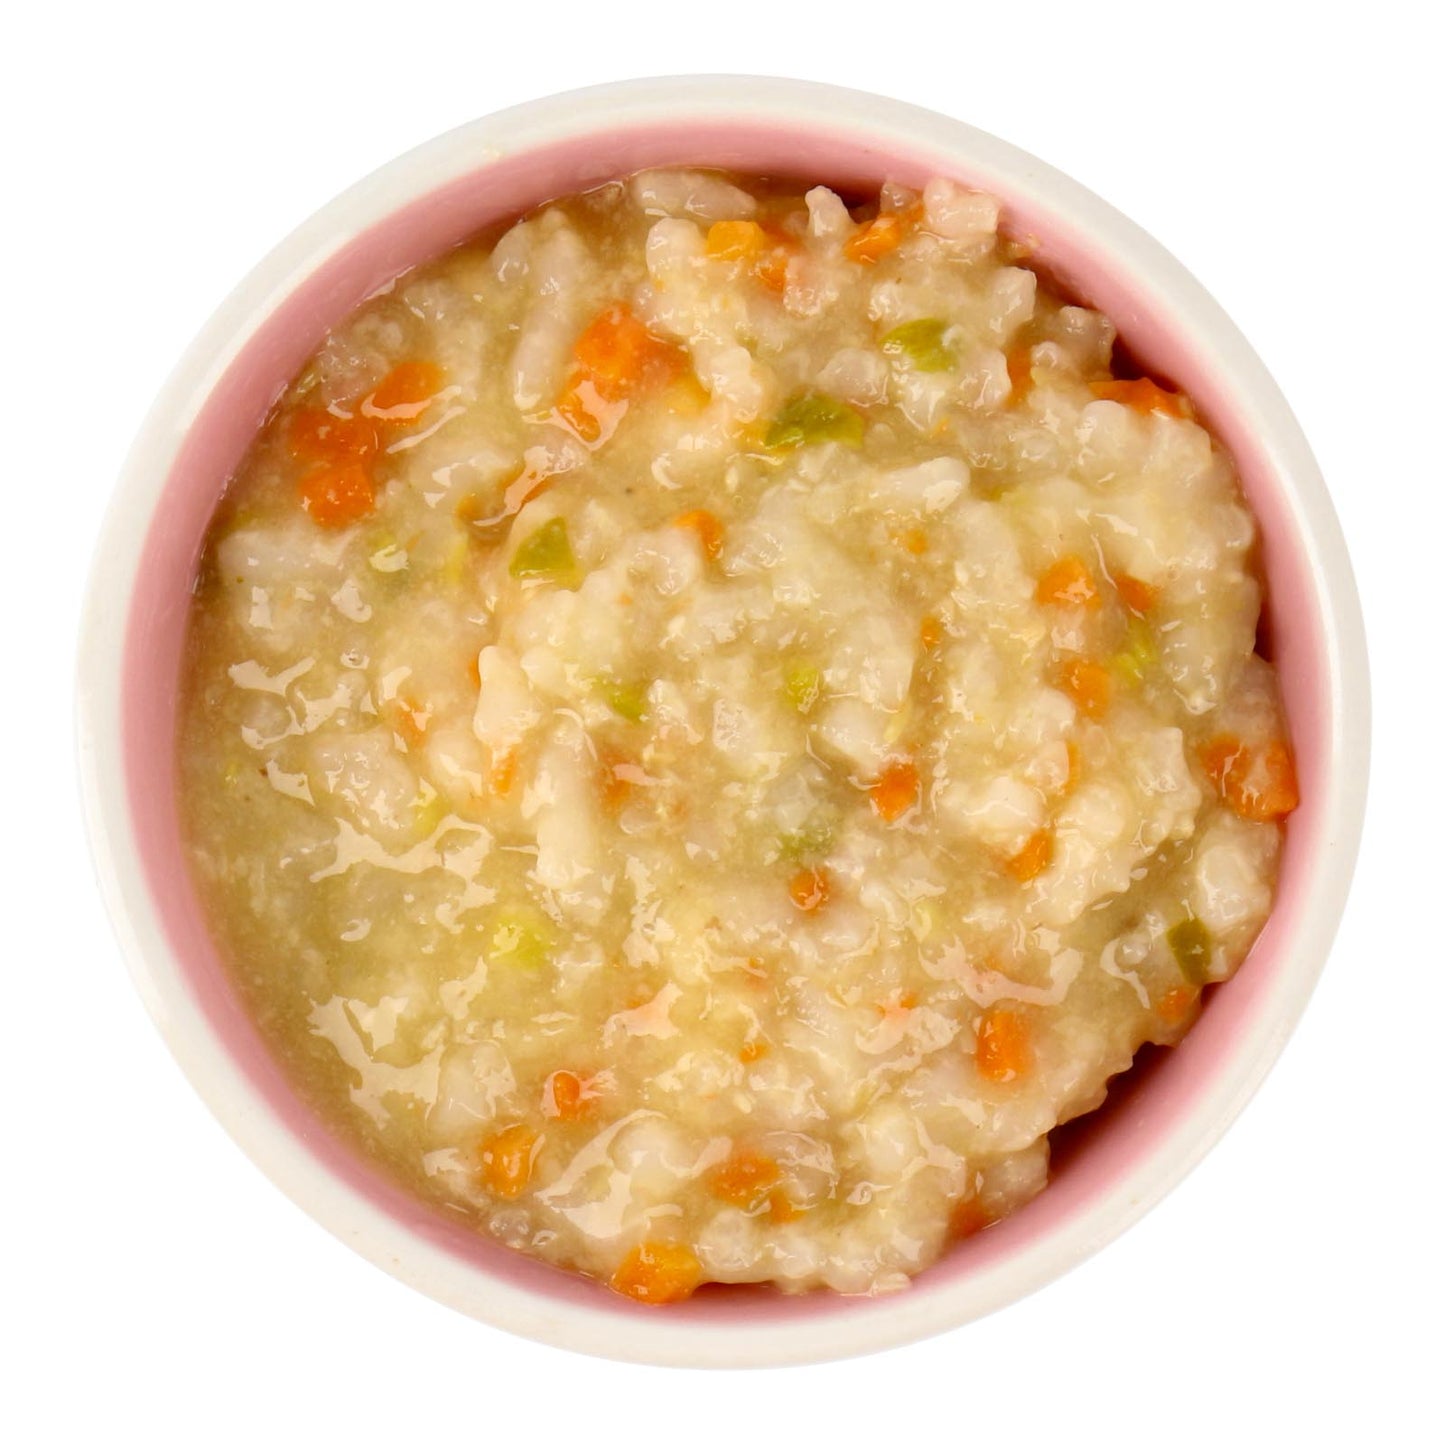 Eusik  - 8-Pk Baby Rice Porridge Select (Abalone & Vegetables) 145g, 10mths+